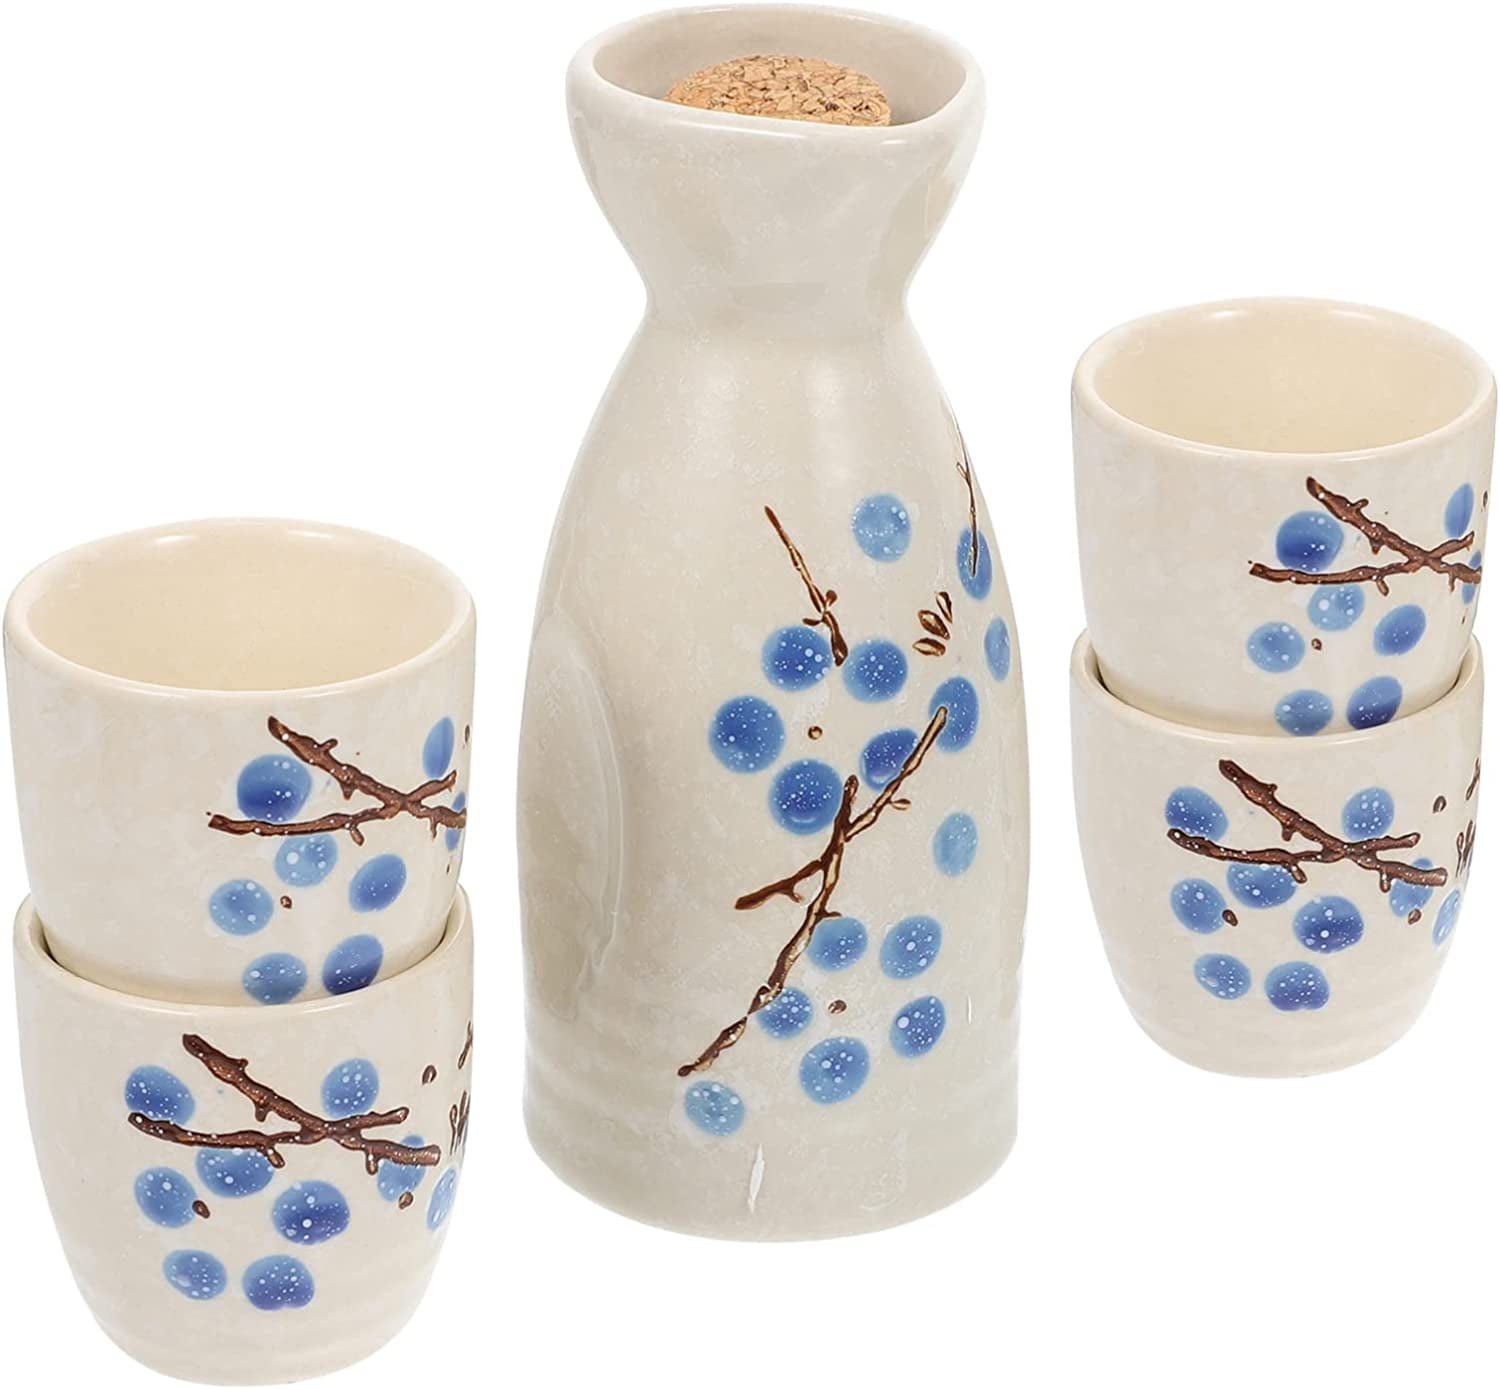 MKYOKO Ceramic Sake Set, Sake Set with Warmer, Traditional Hot Saka Set,  Including Electric Base, Warming Mug, Sake Pot, Sake Cups and 1 Tray,6cup